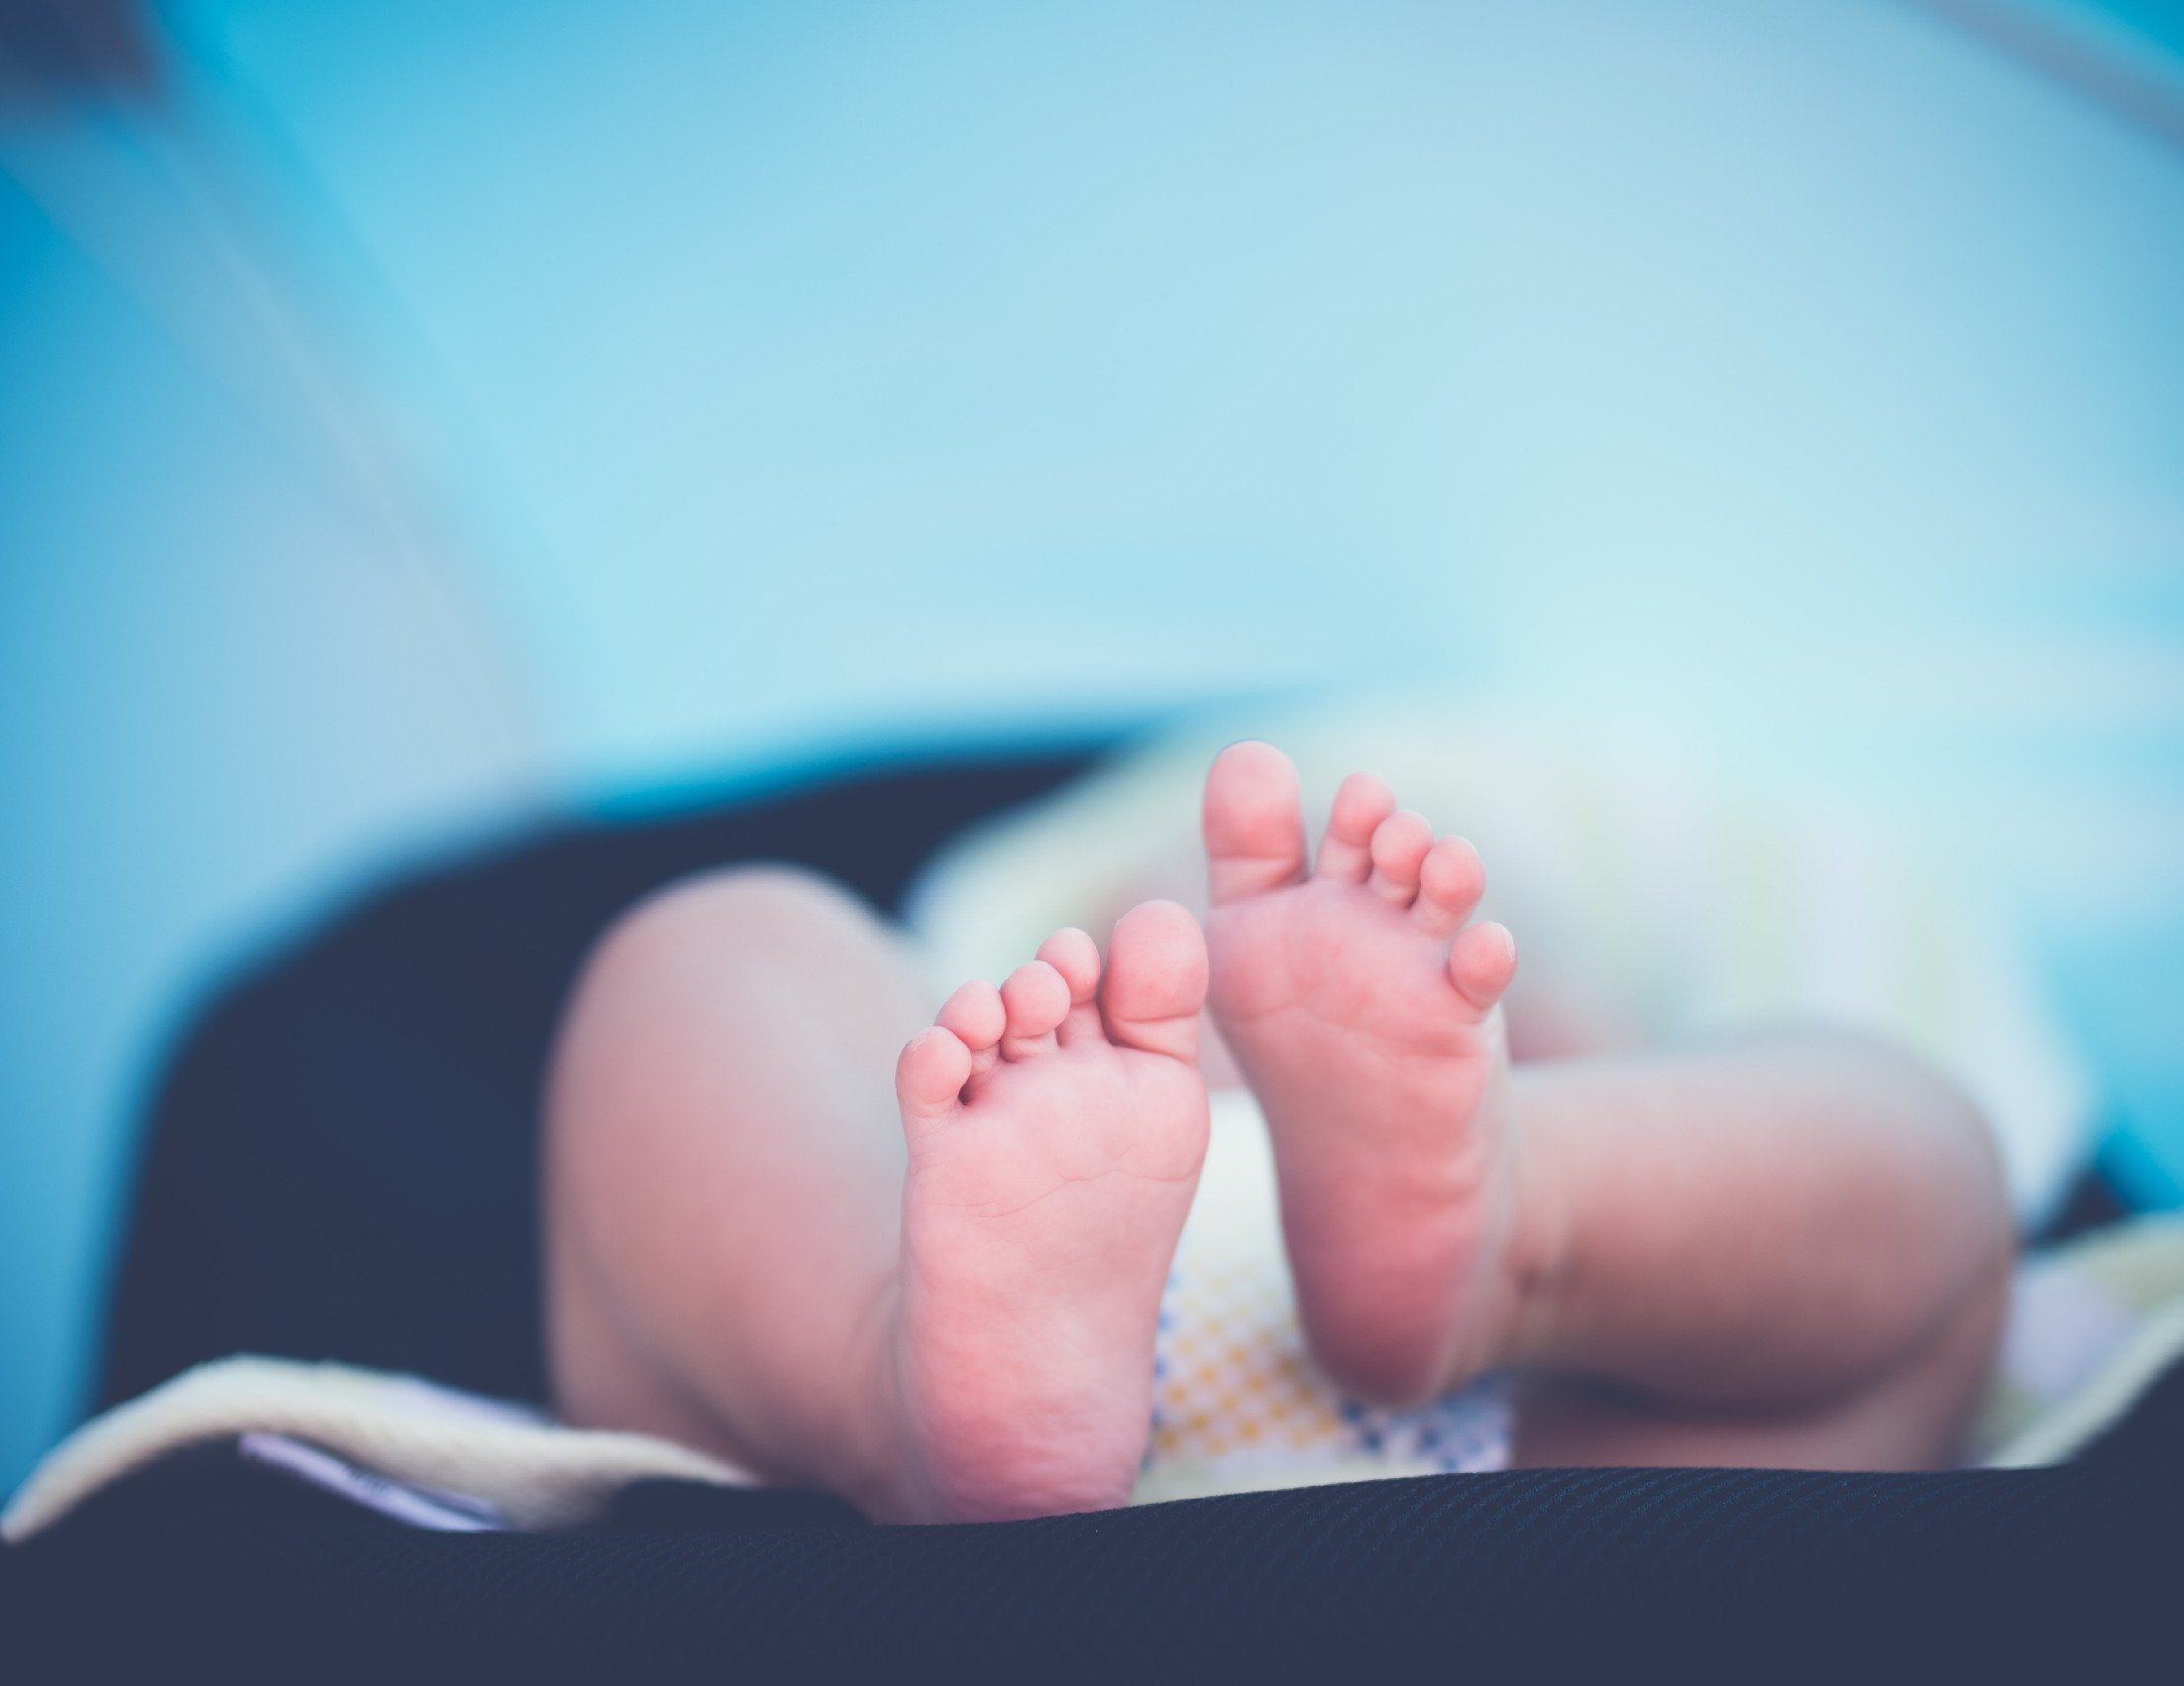 Megduplázódott a csecsemőhalálozások száma, vizsgálat indult